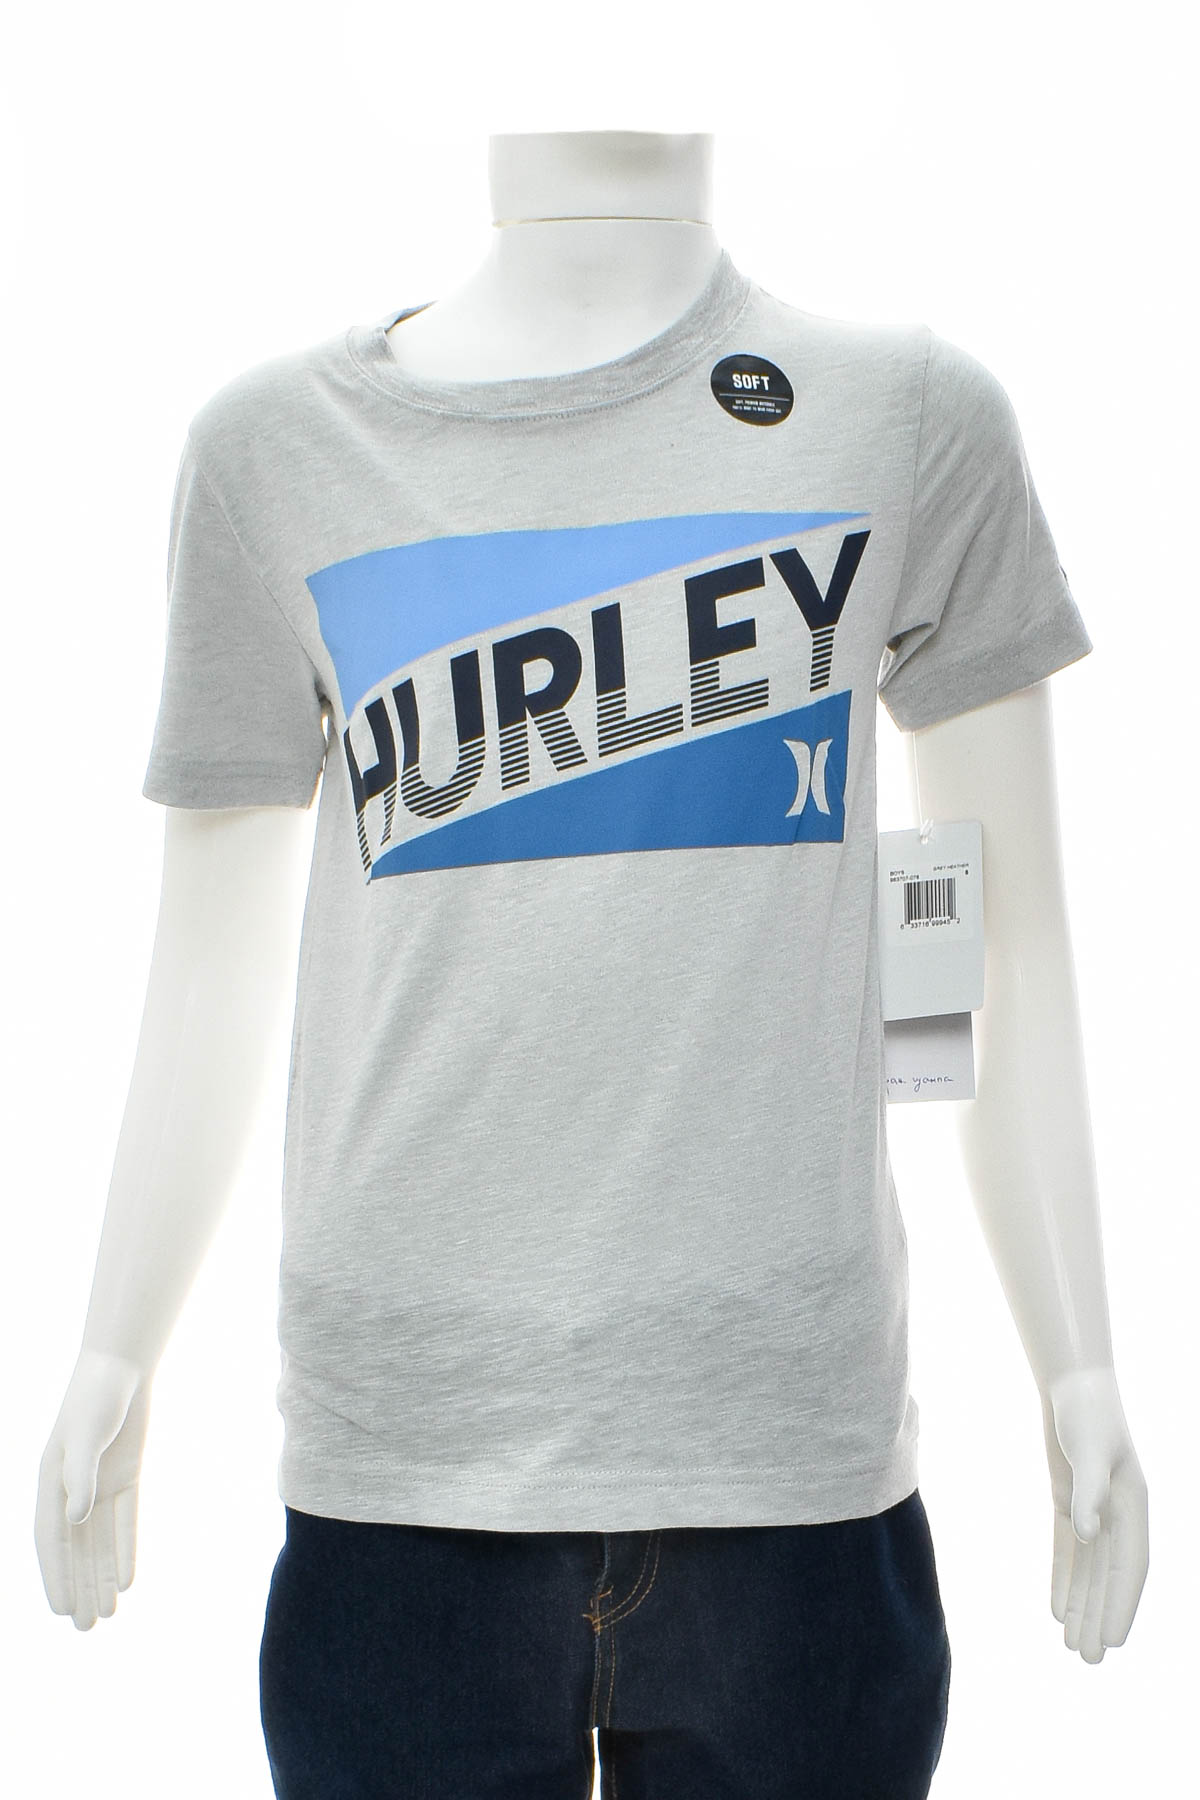 Koszulka dla chłopca - Hurley - 0